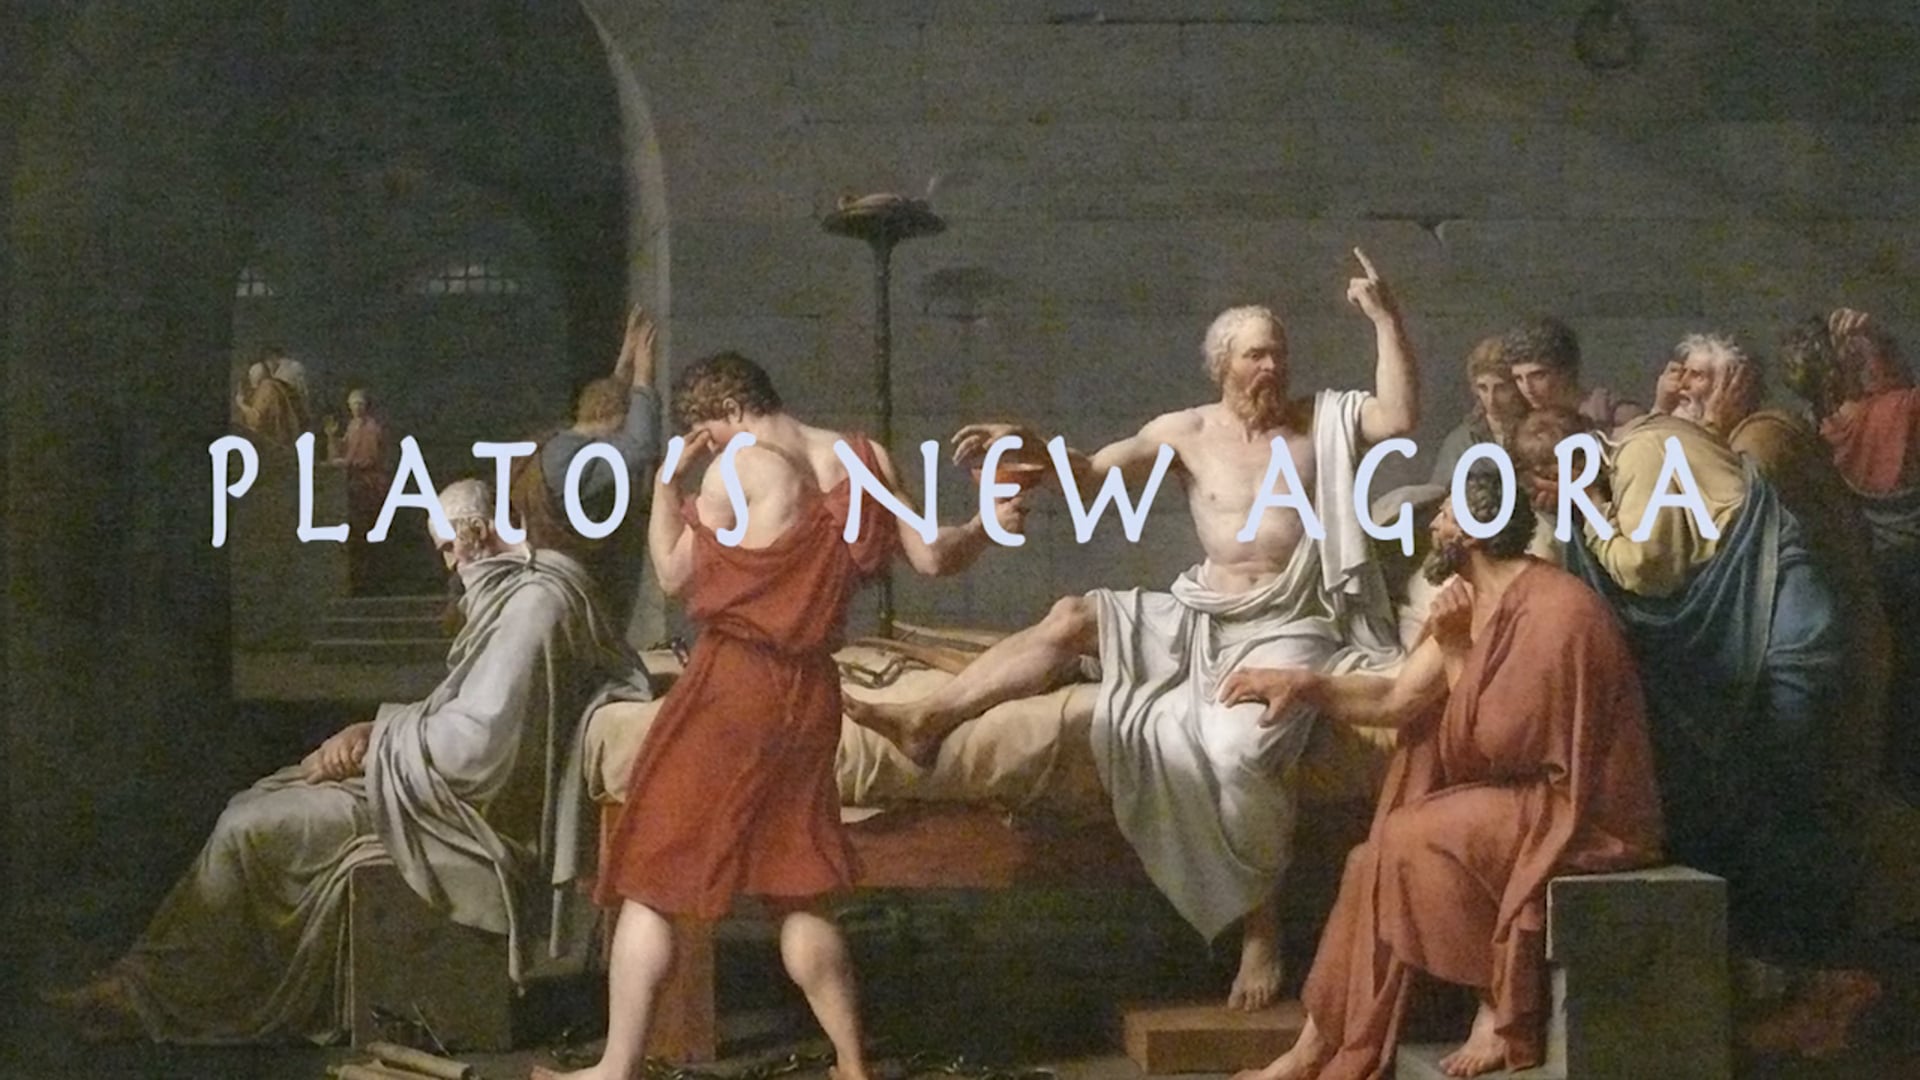 Plato's New Agora Trailer